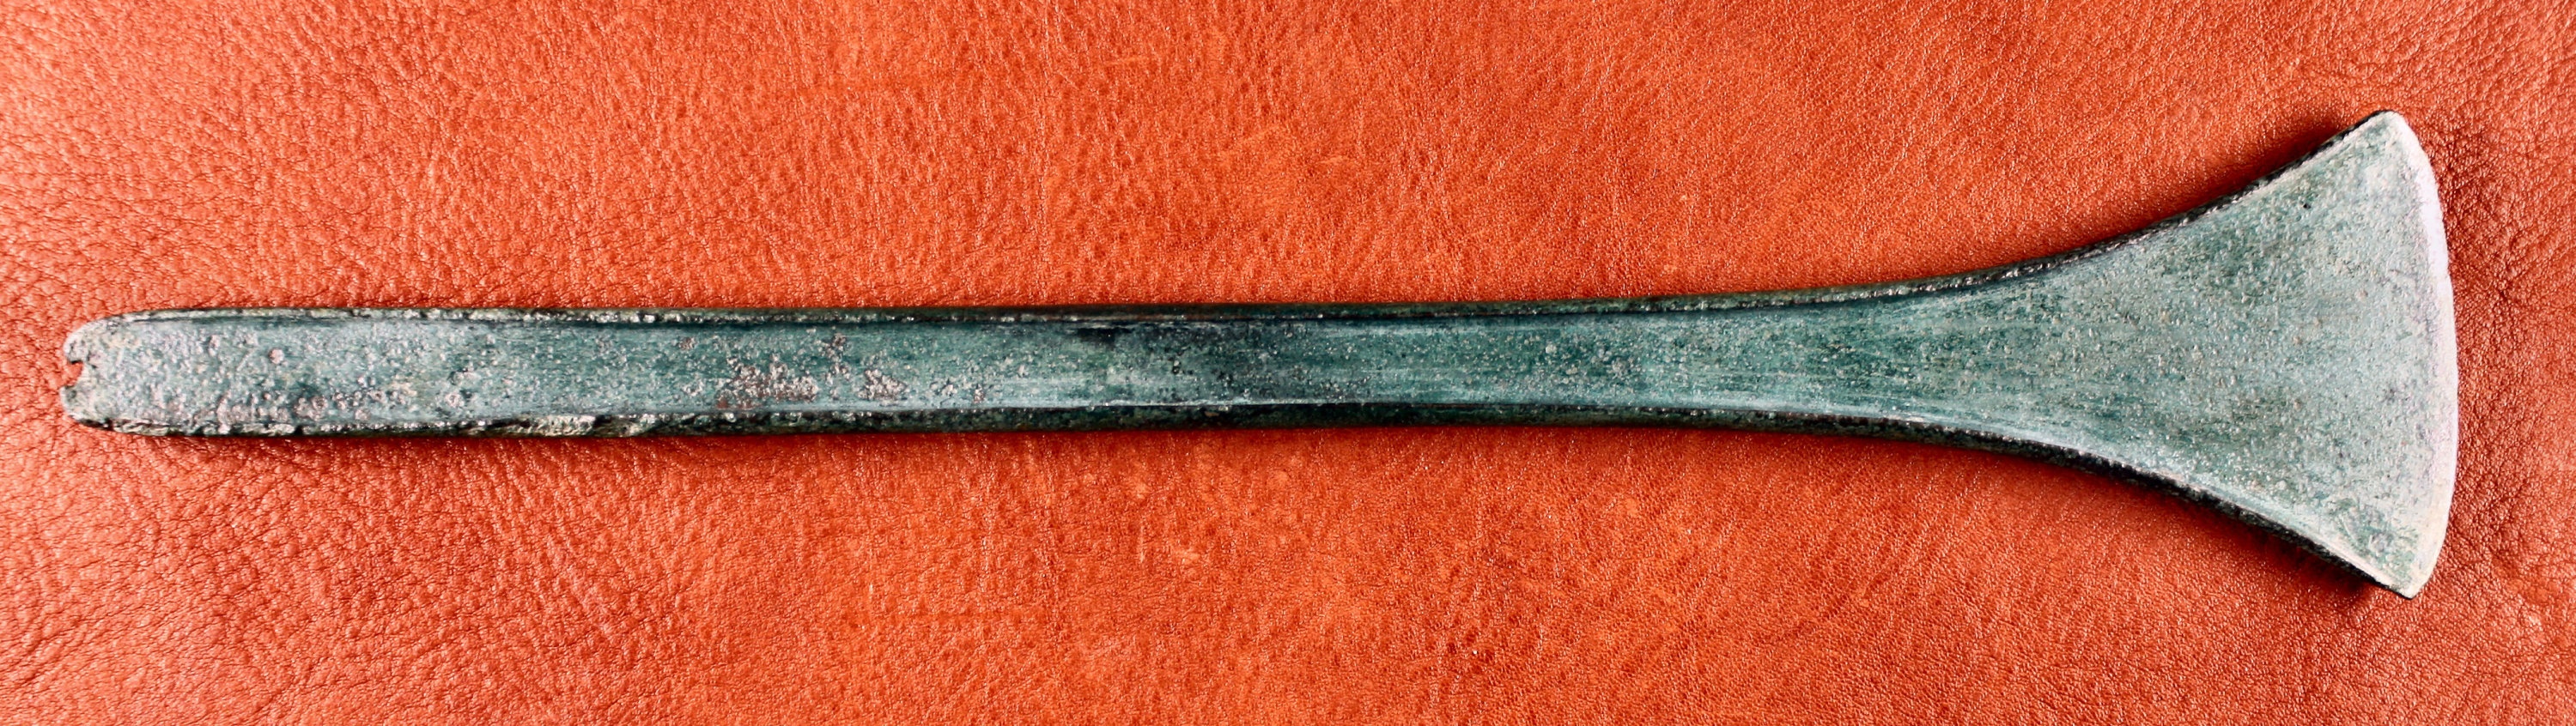 Randleistenbeil vom Typ „Kläden“ aus dem Hortfund von Kläden bei Stendal (Johann-Friedrich-Danneil-Museum Salzwedel CC BY-NC-SA)